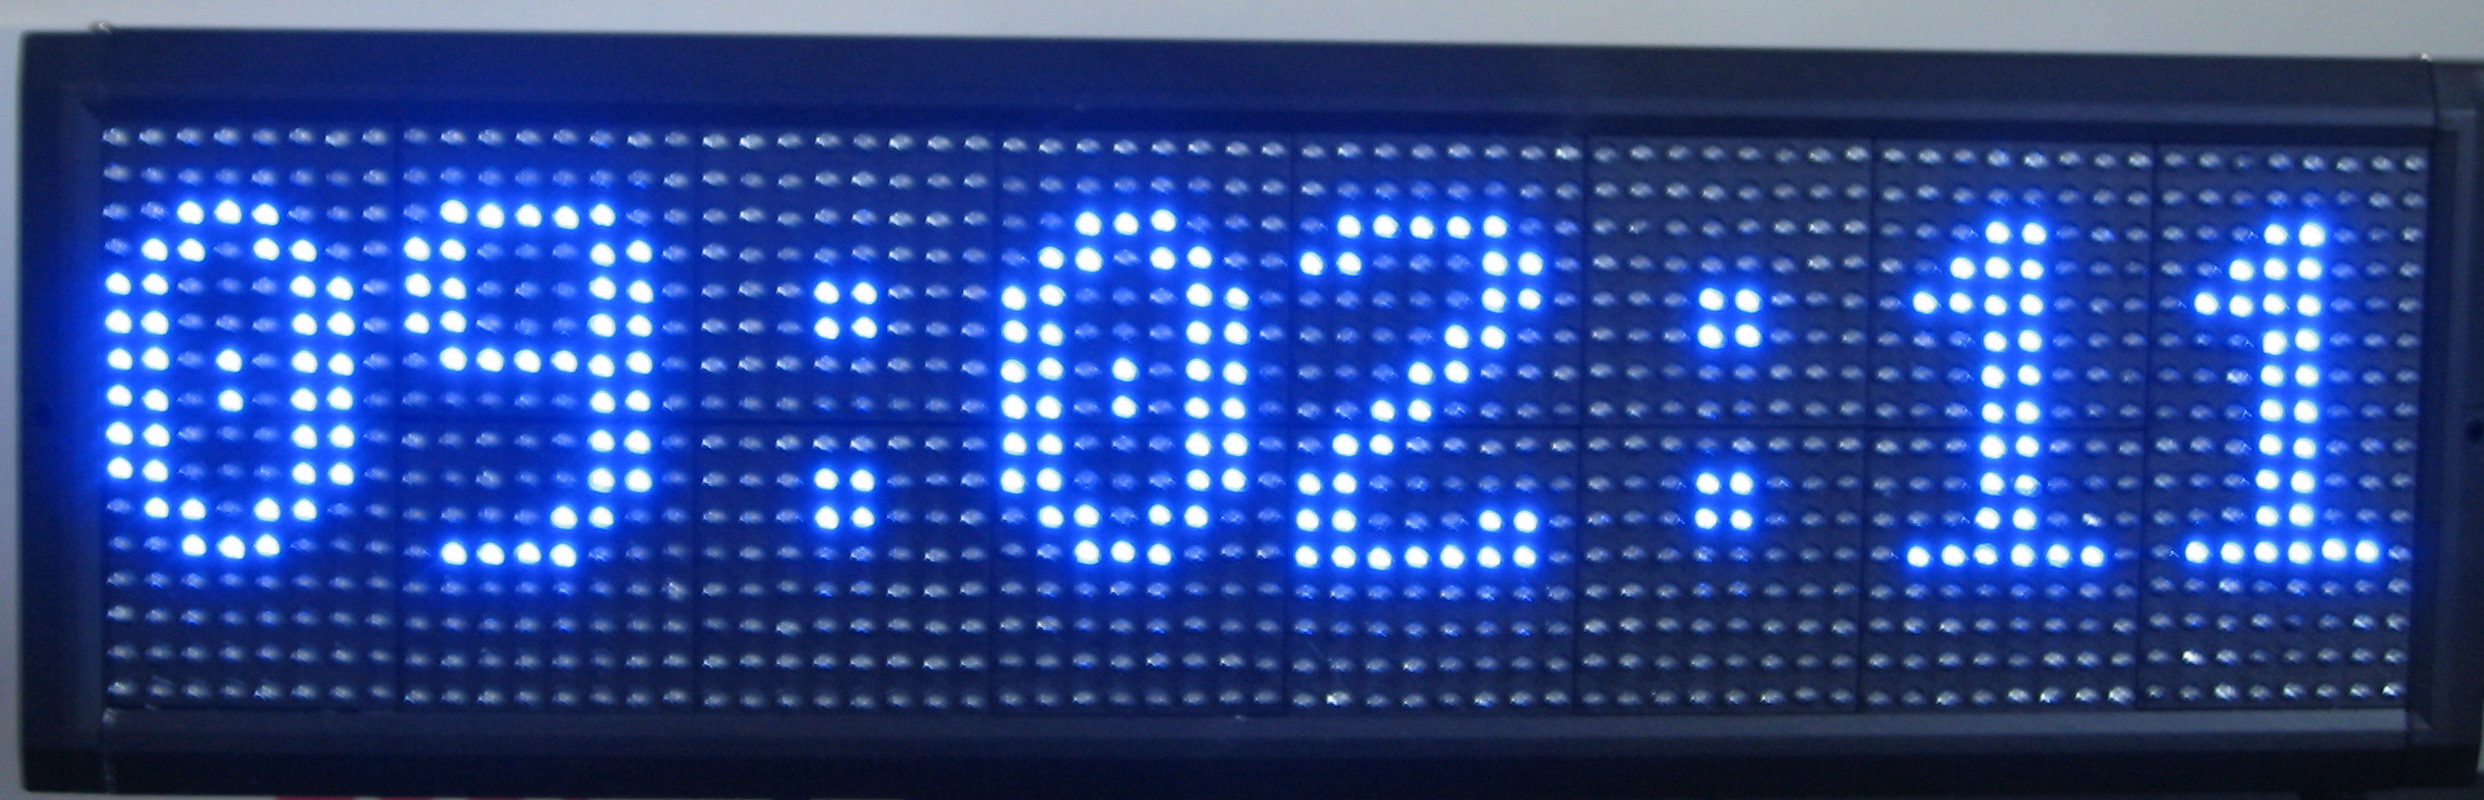 LED Panel Displays